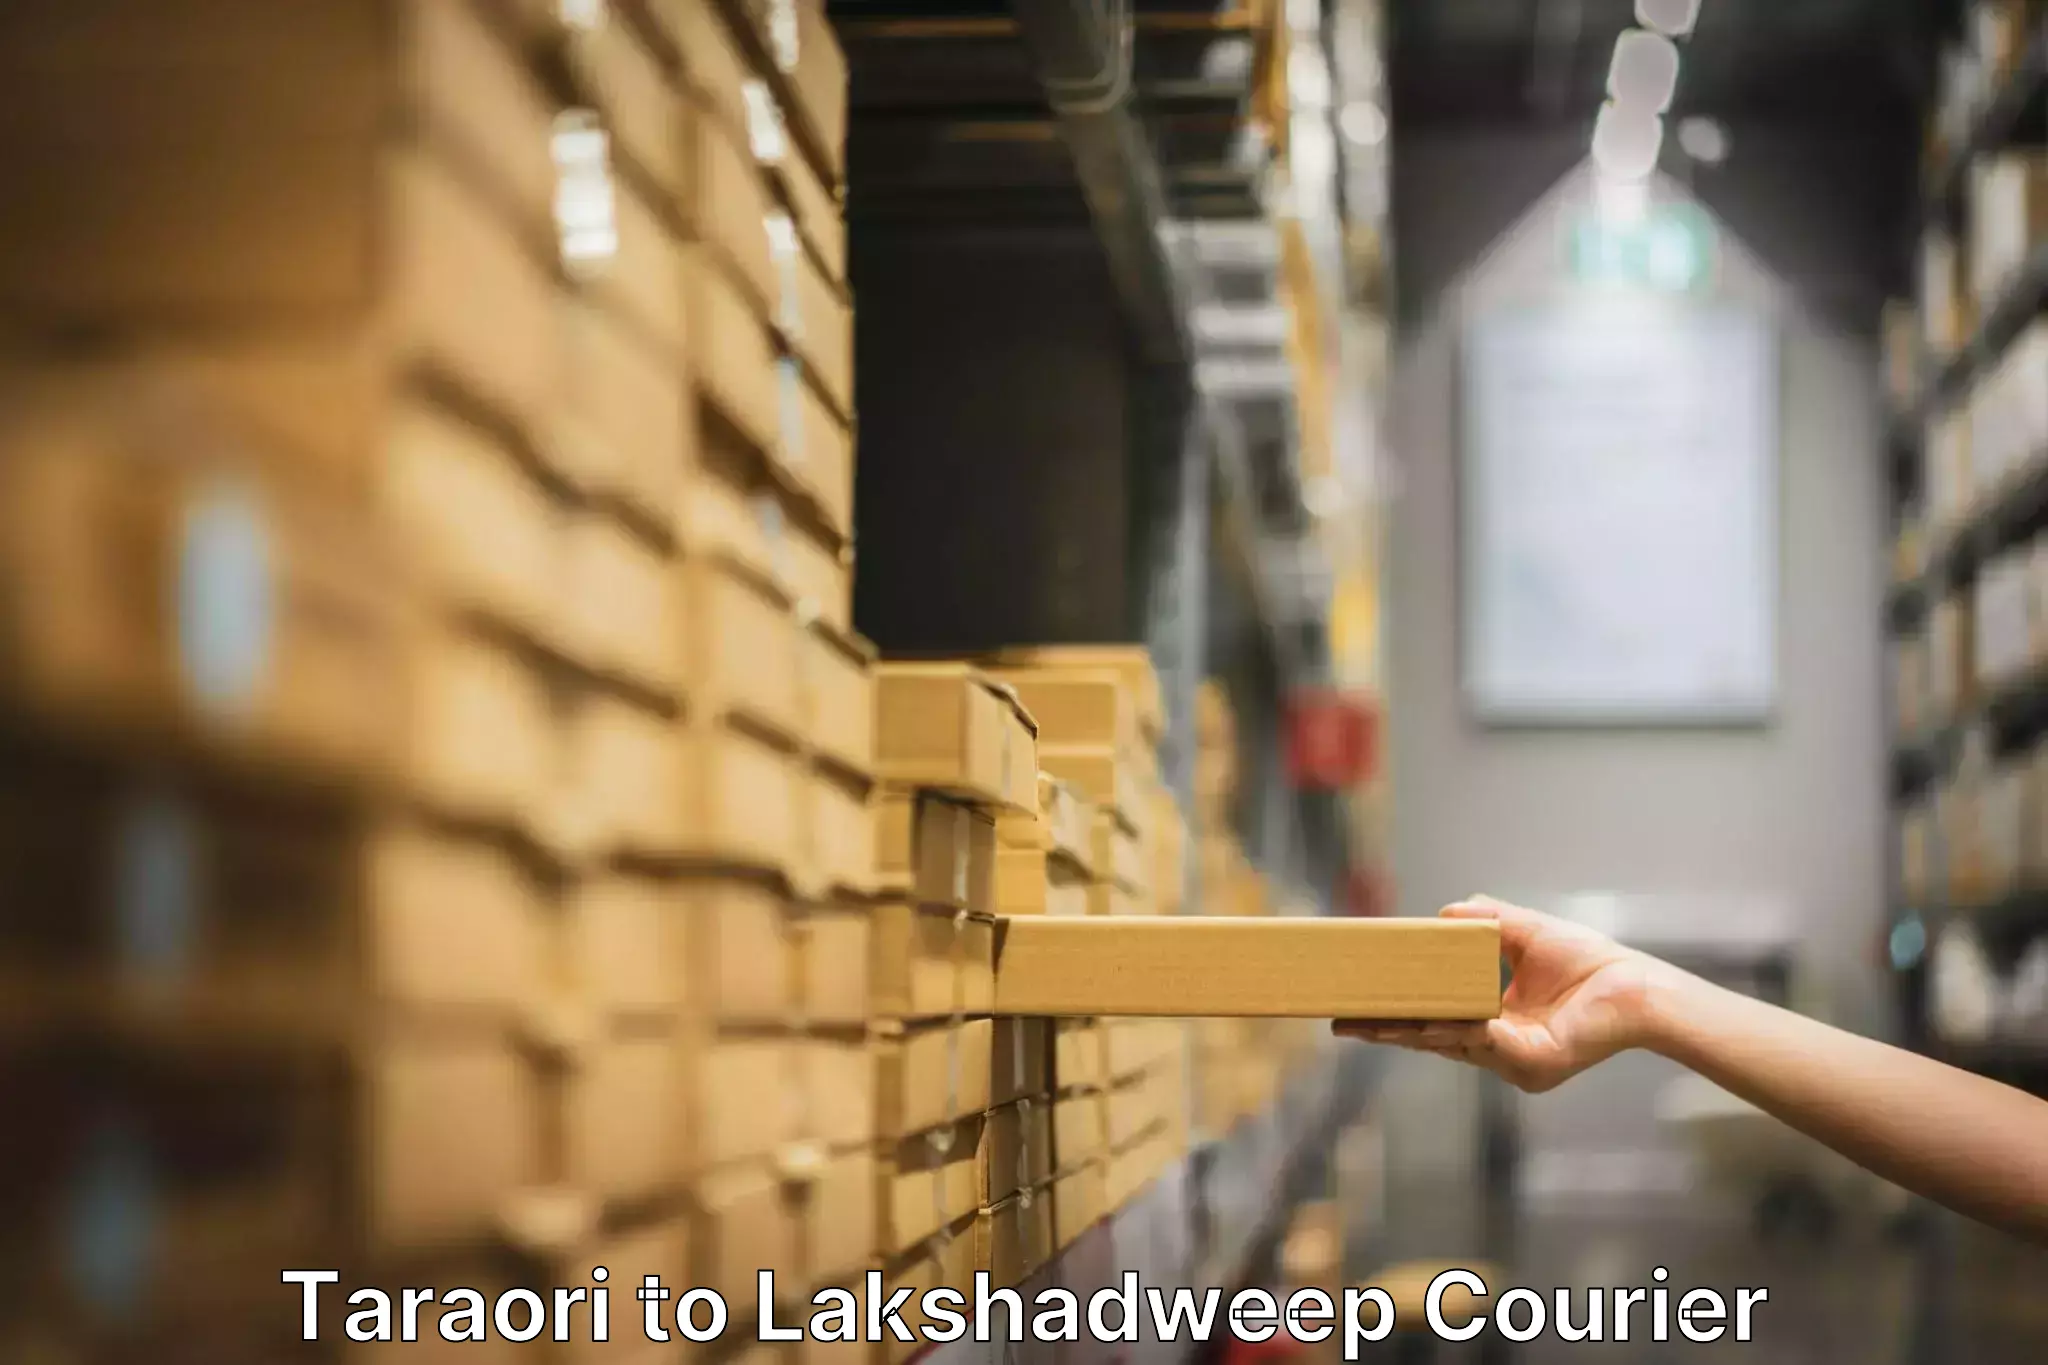 Household moving experts Taraori to Lakshadweep